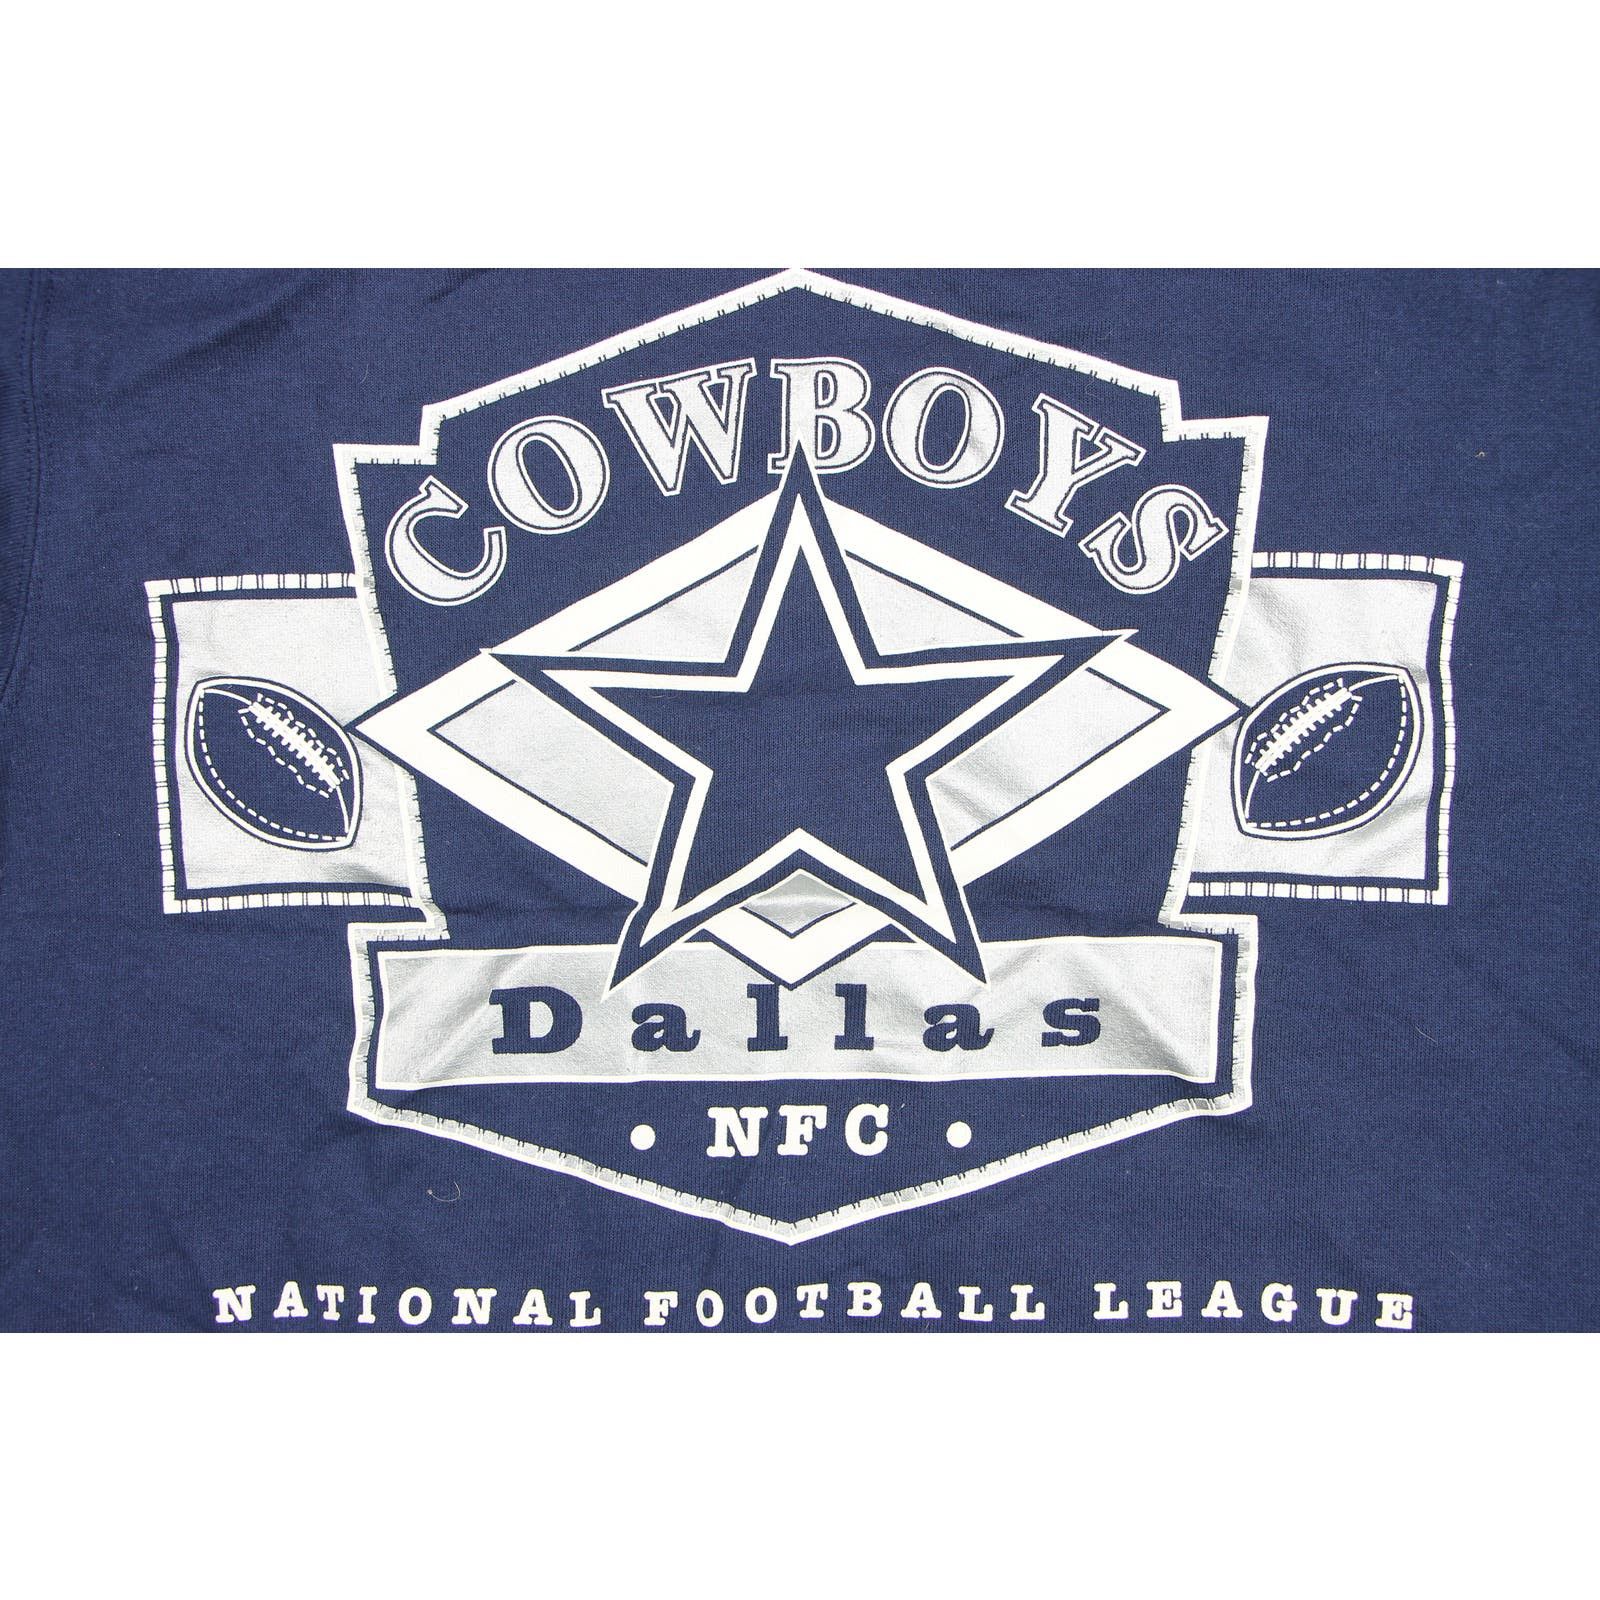 Hanes 90s Vintage Dallas Cowboys Football Crewneck Sweatshirt Size US S / EU 44-46 / 1 - 1 Preview